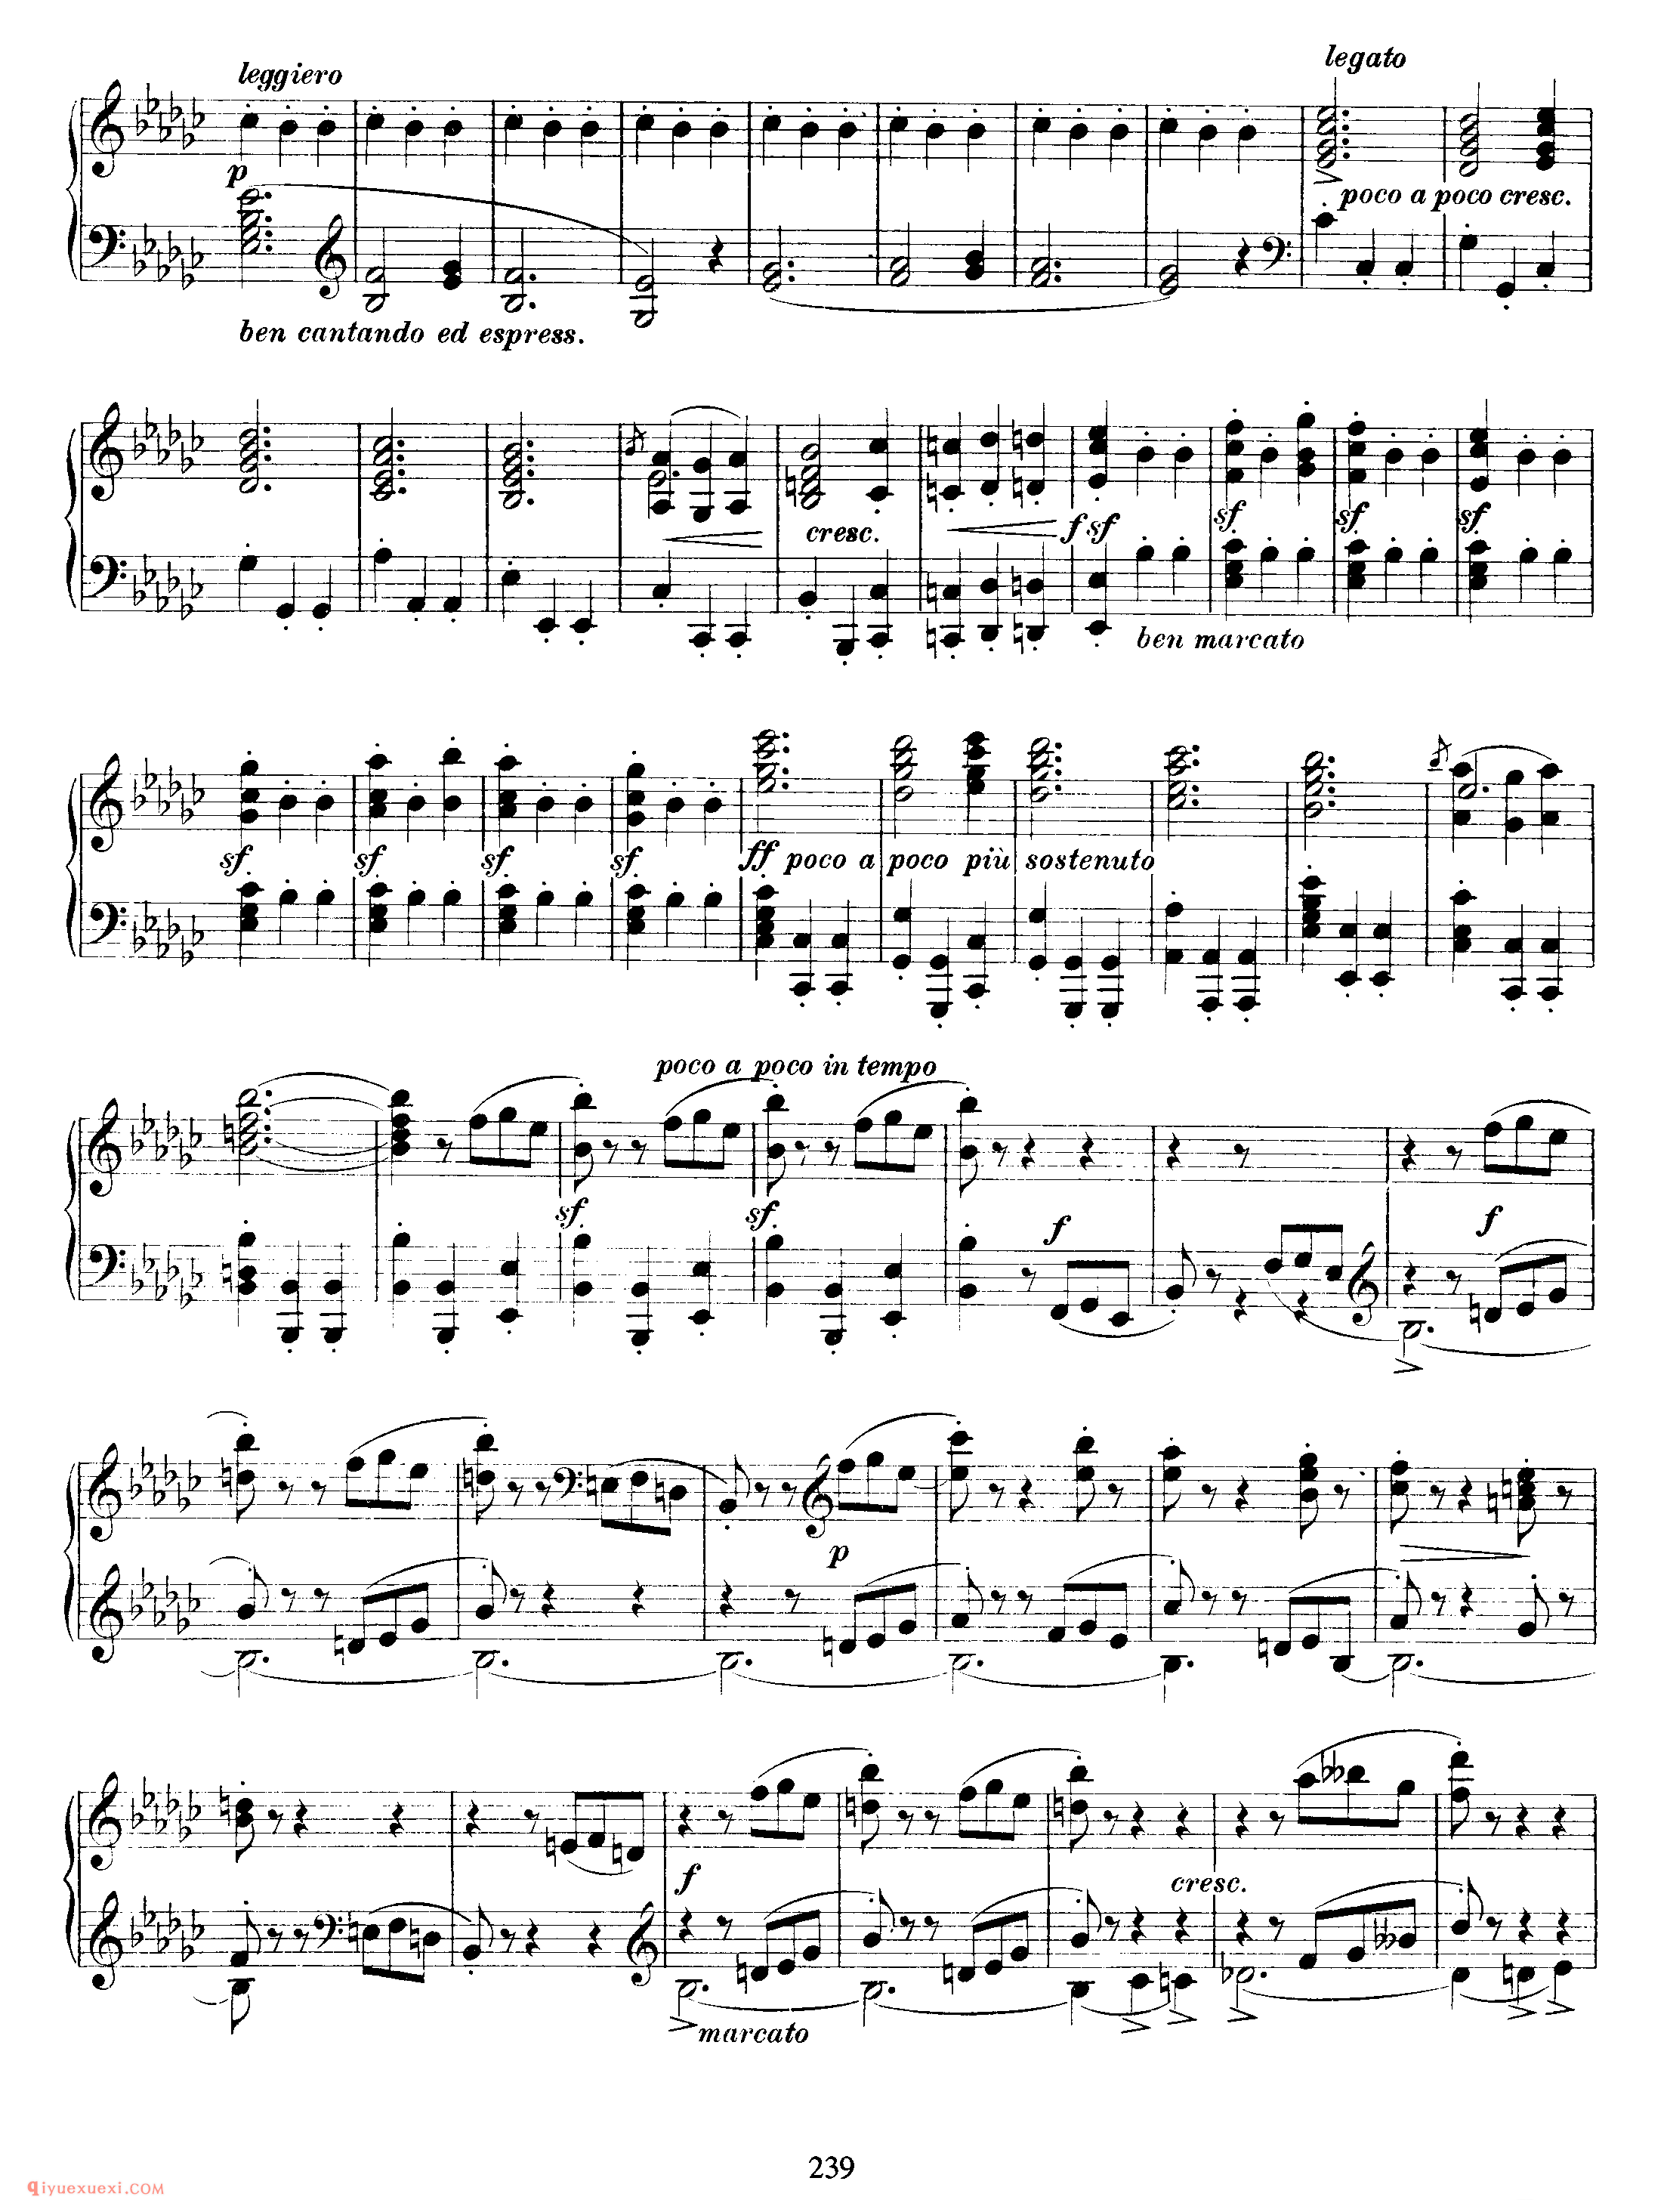 勃拉姆斯《谐谑曲》作品4_ Scherzo Op.4_约翰内斯·勃拉姆斯钢琴乐谱